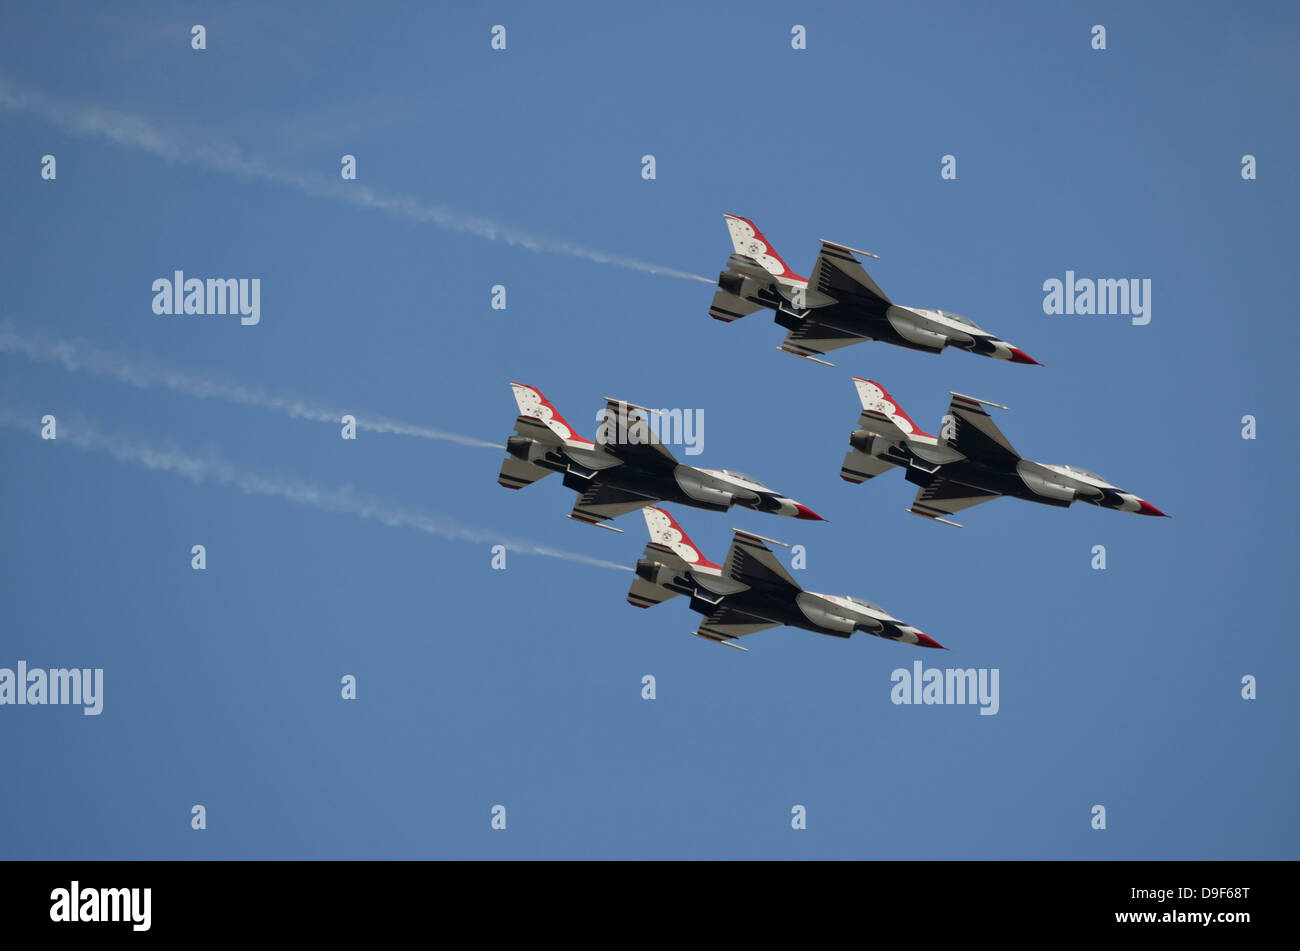 L'United States Air Force Thunderbirds de l'escadron de démonstration voler en formation diamant plus de Lakeland, en Floride. Banque D'Images